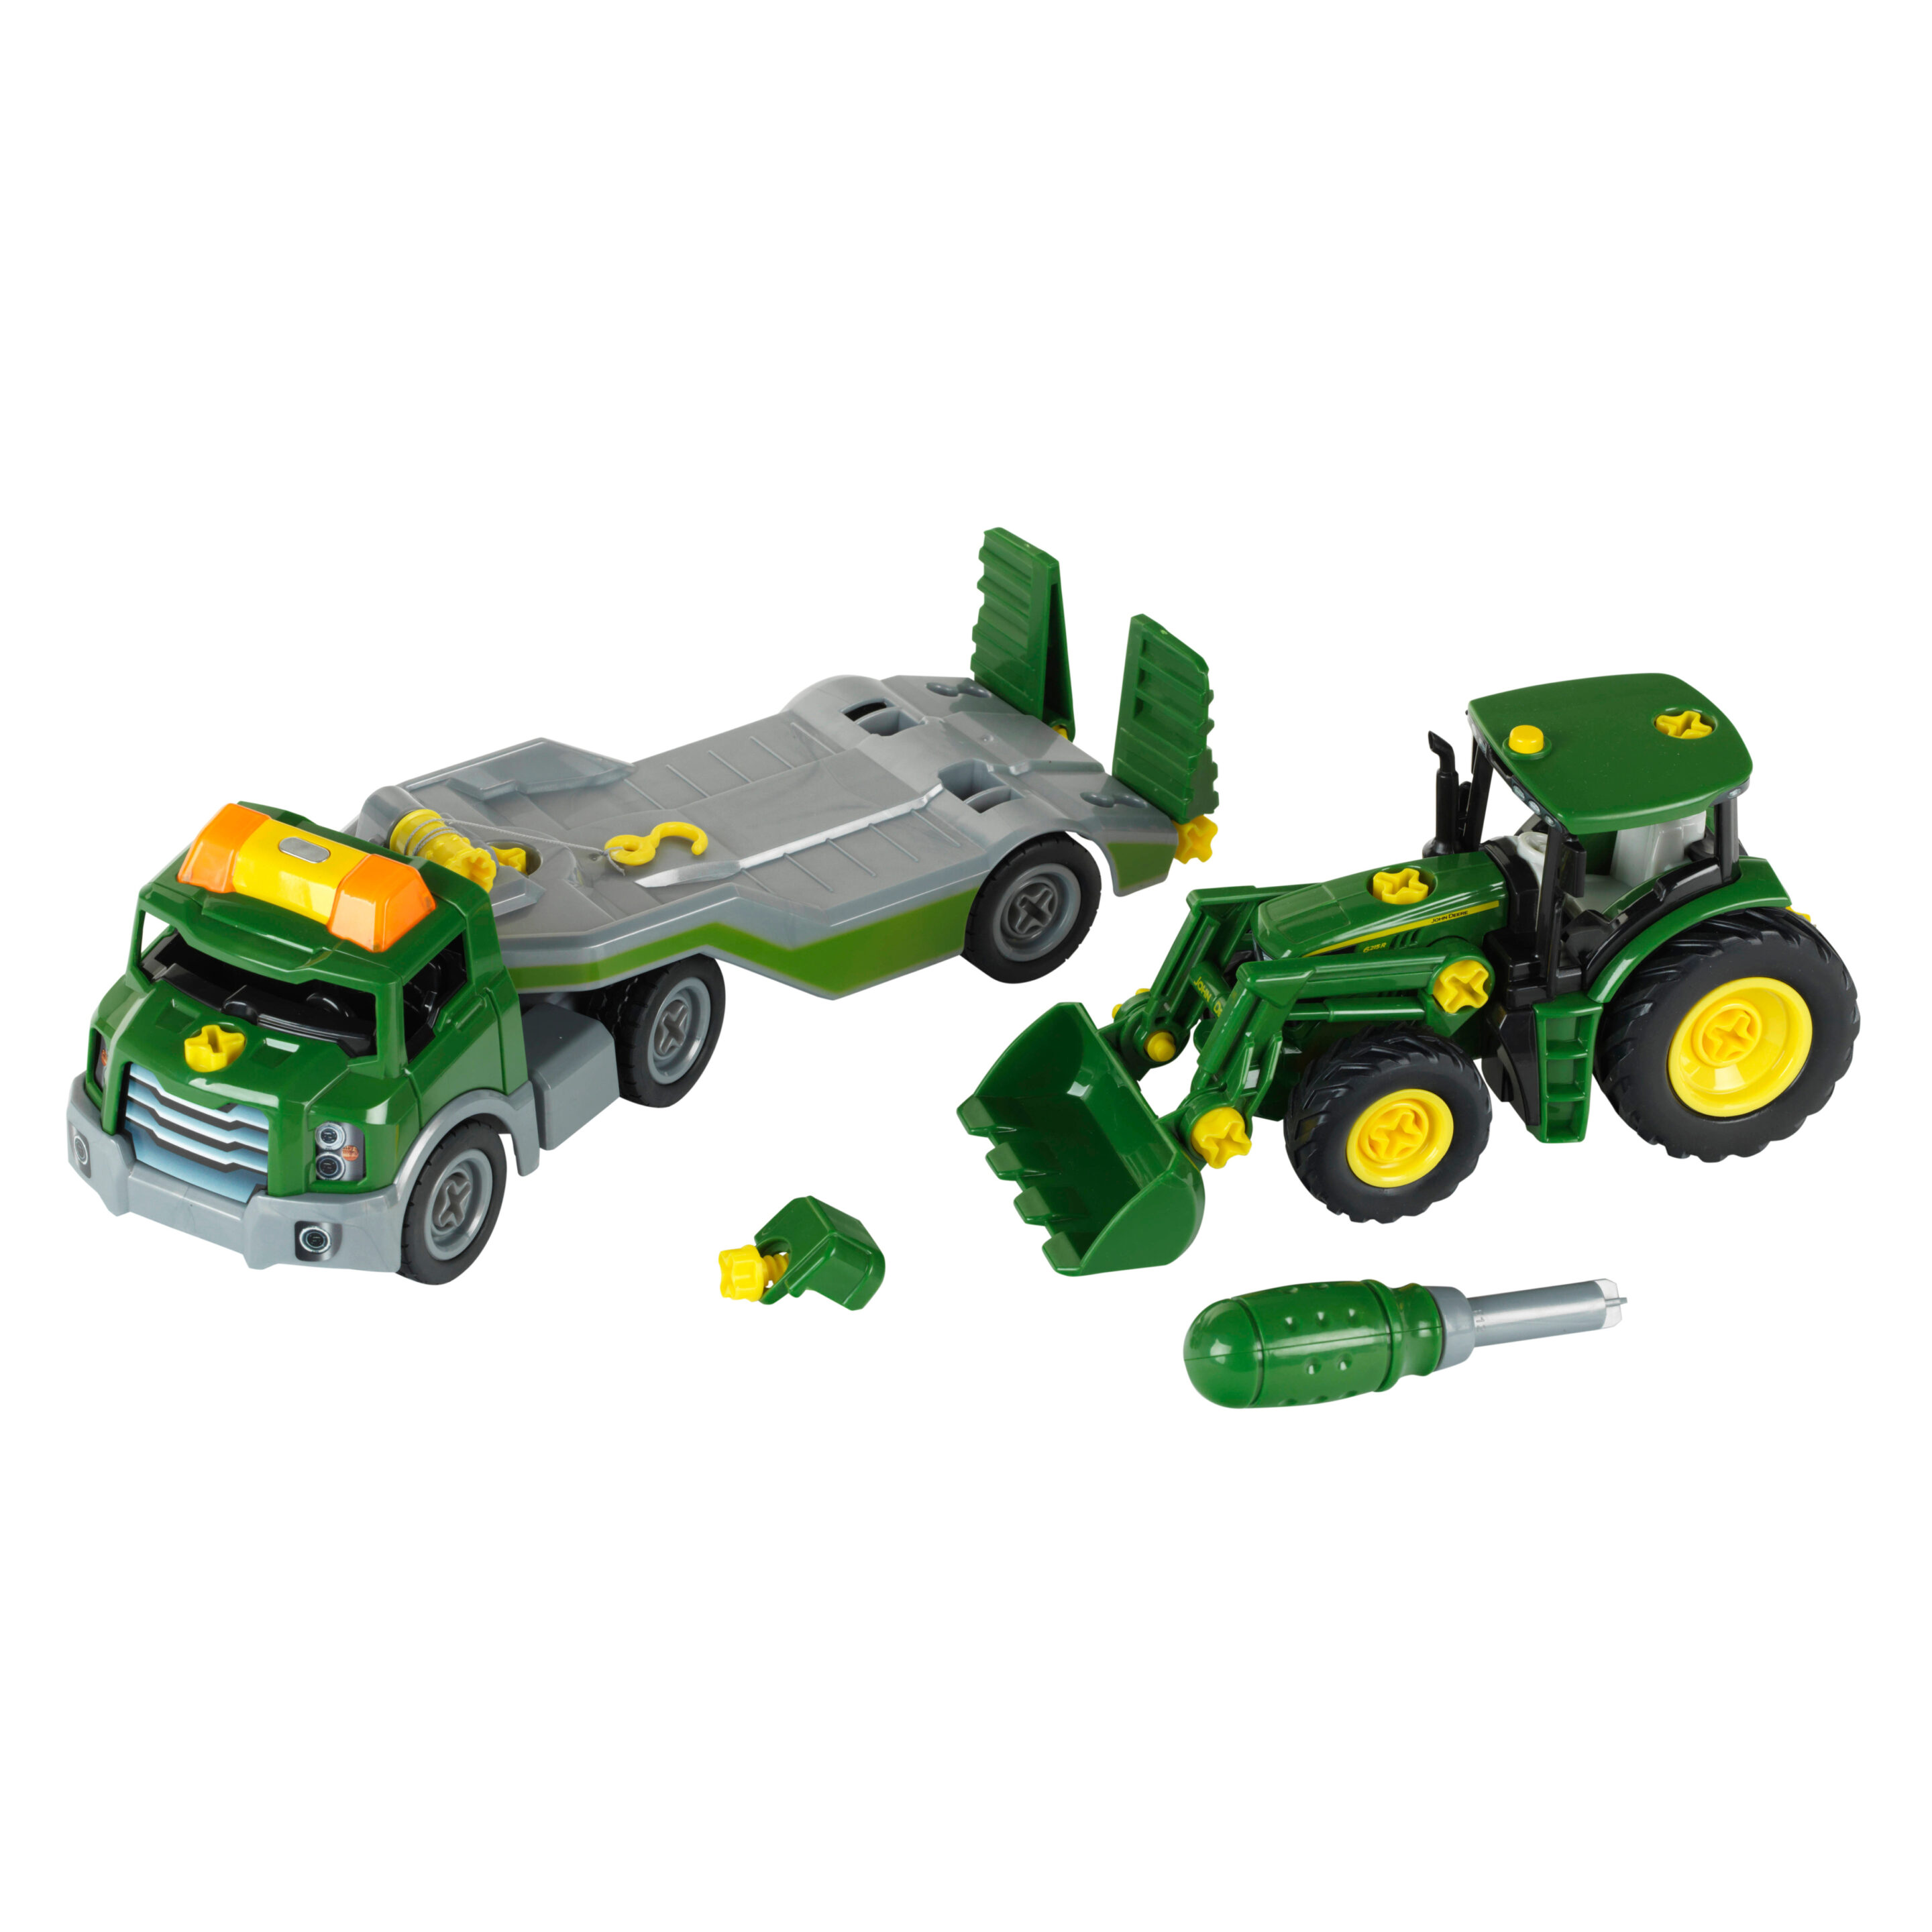 John Deere - Tractor with transporter, 1:24